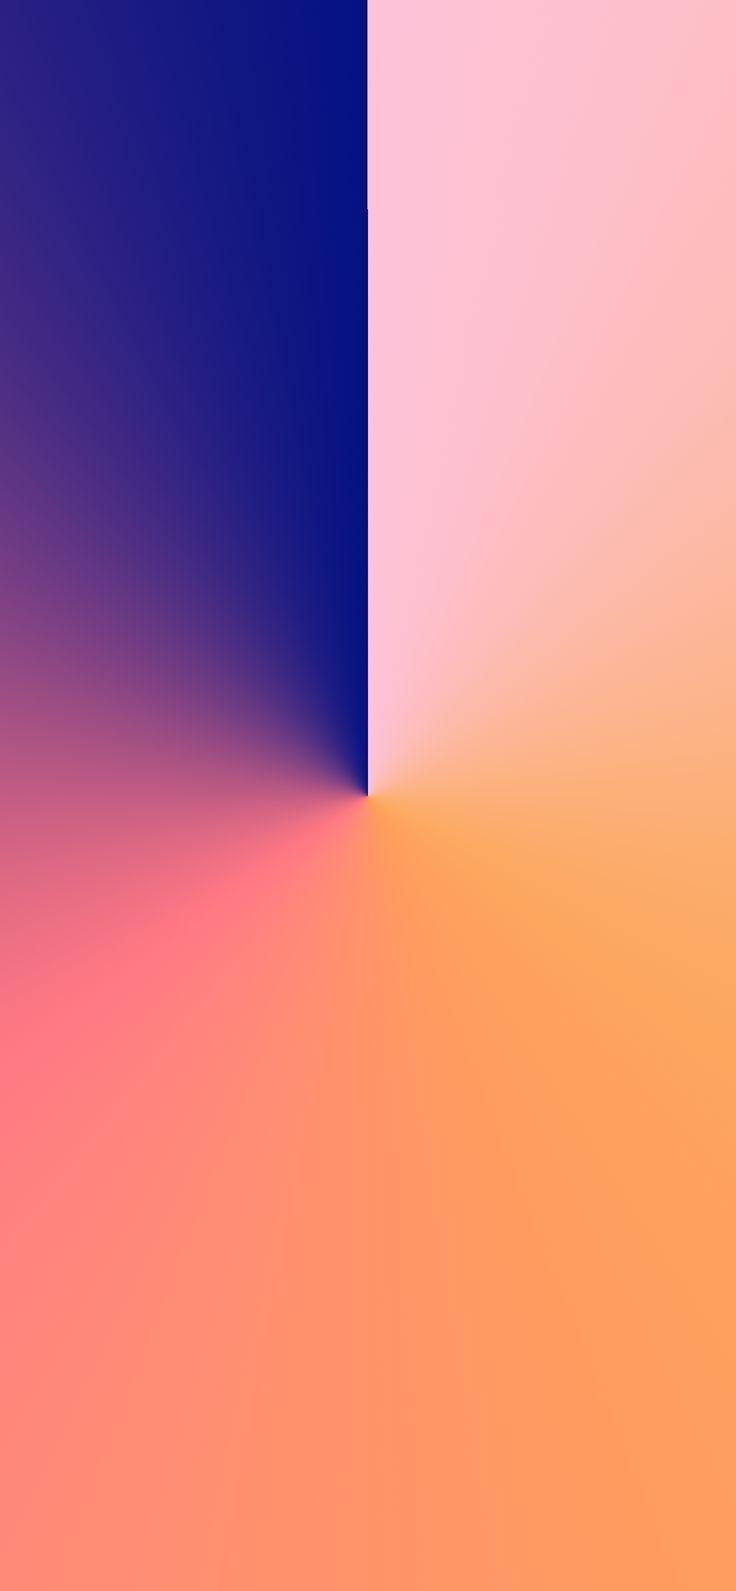 Vibrant Split Colors iPhone Pro Max Wallpaper